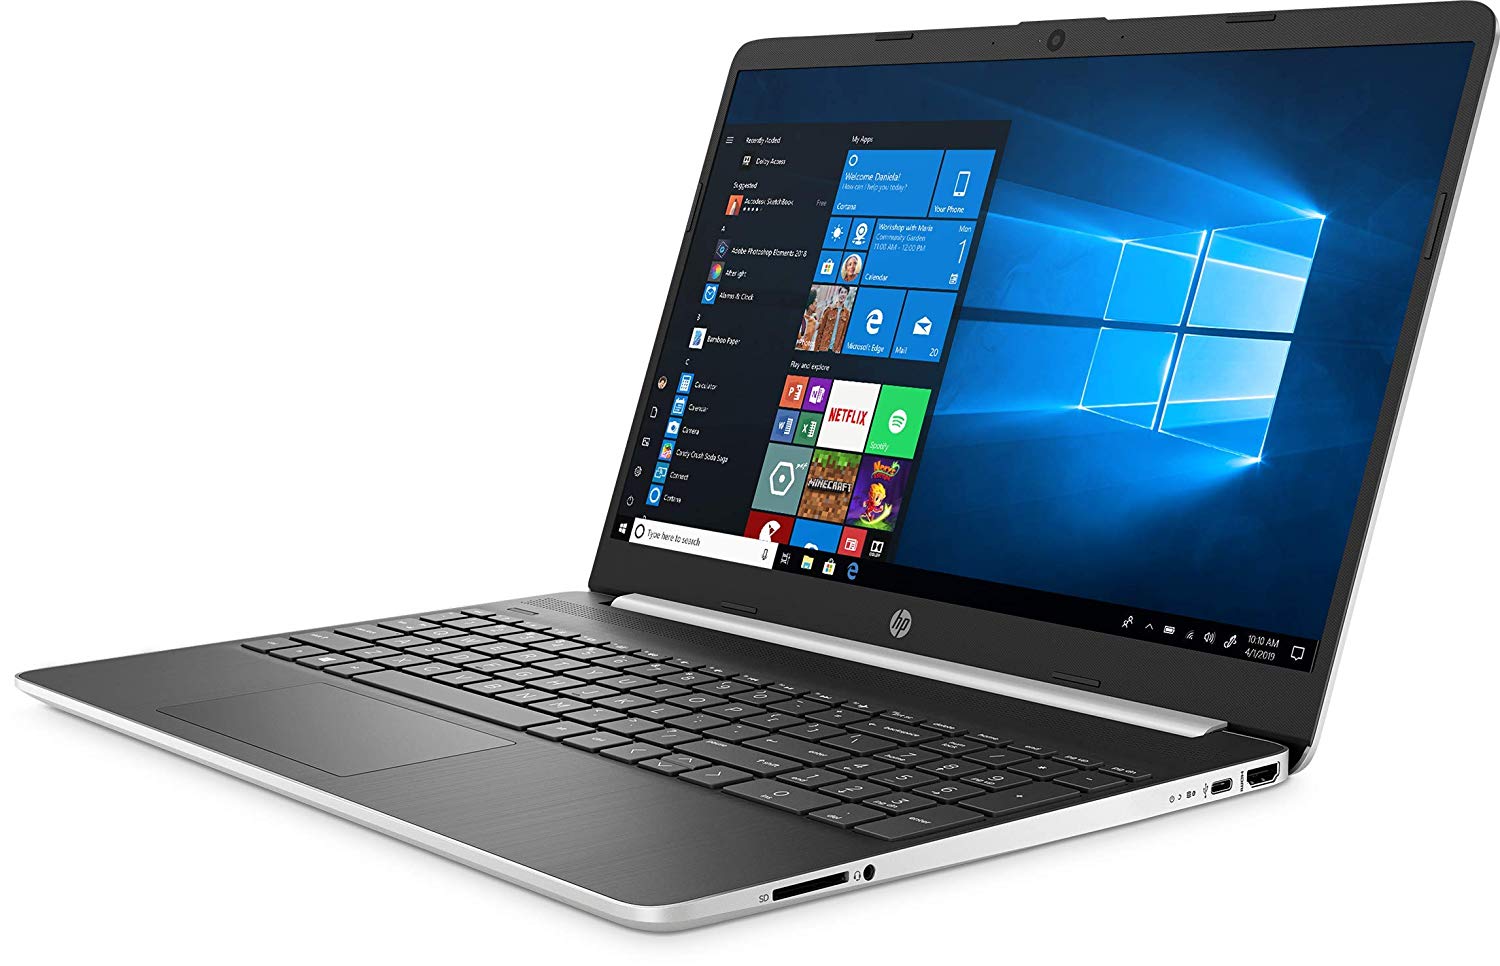 Hp Laptop 15 Dy 1751 Ms 10th Generation Intel® Core™ I5 1035g1 Processors 8gb Ram 512gb Ssd 5309